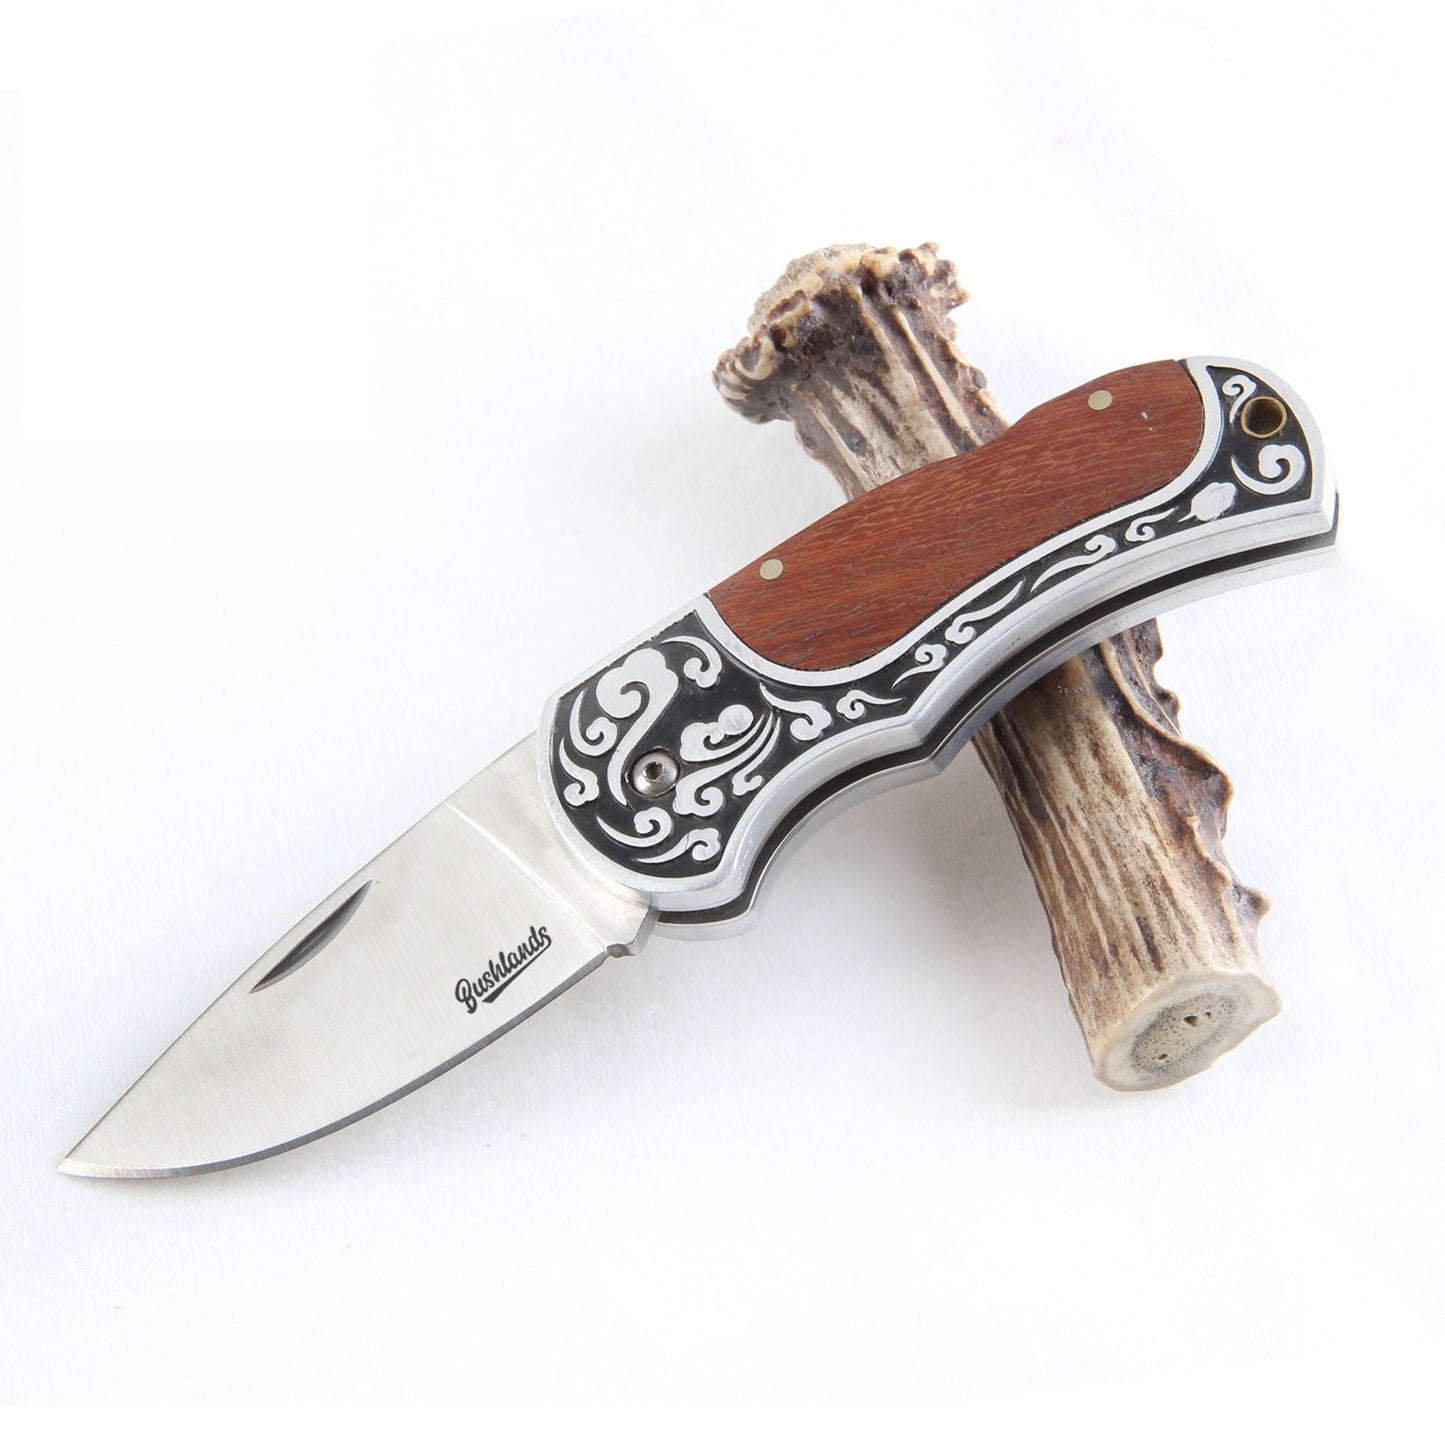 Bushlands Bushlands Mini Set Lockable Folding Skinning Knife - With Rosewood Handle #0174 Sienna